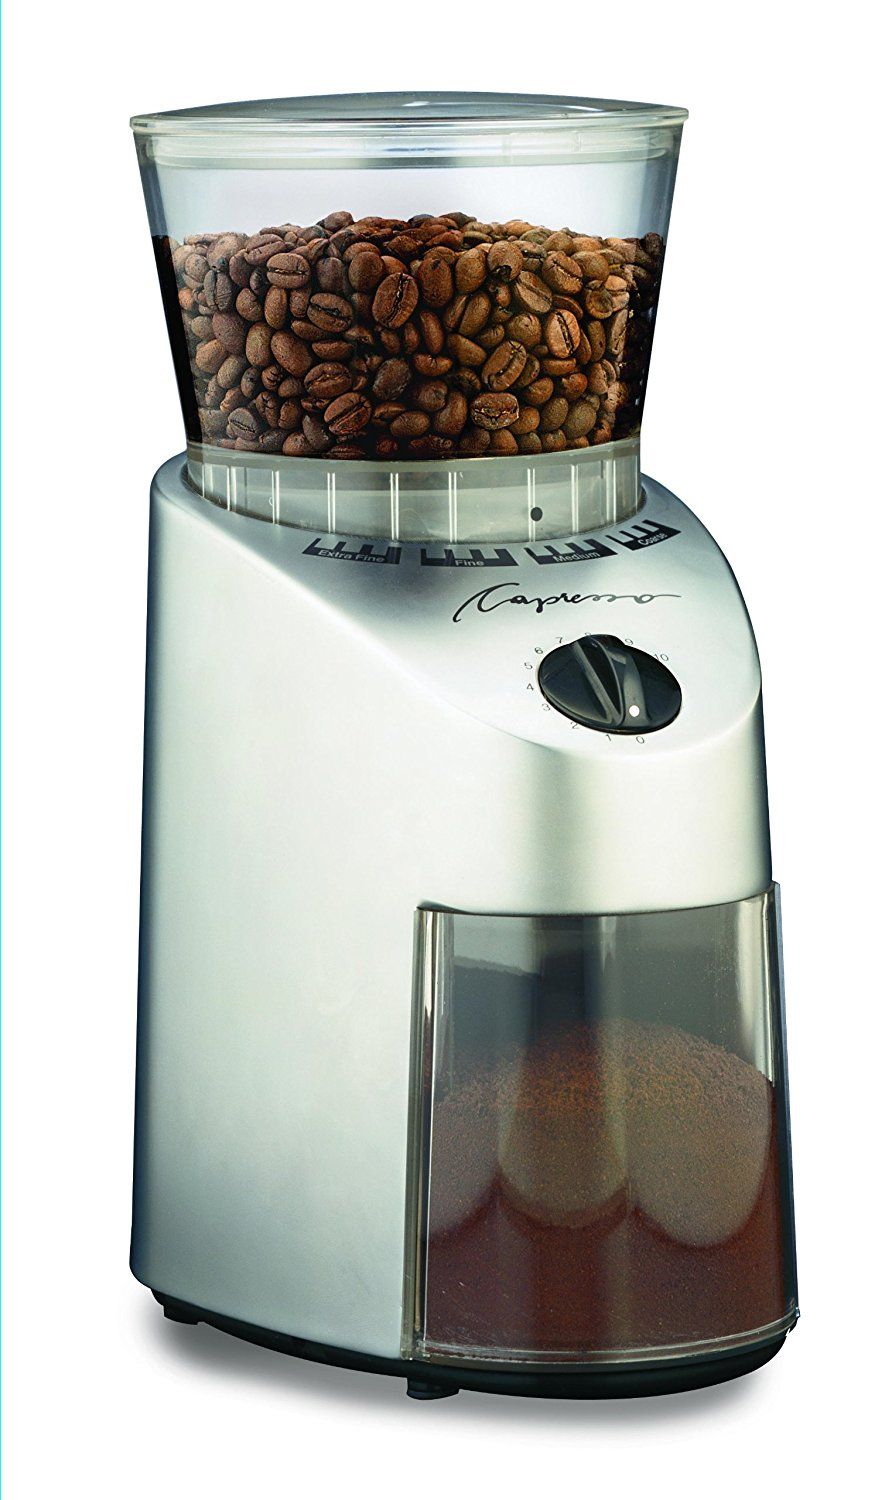 Moledor de café Capresso diseño elegante y fácil de usar.